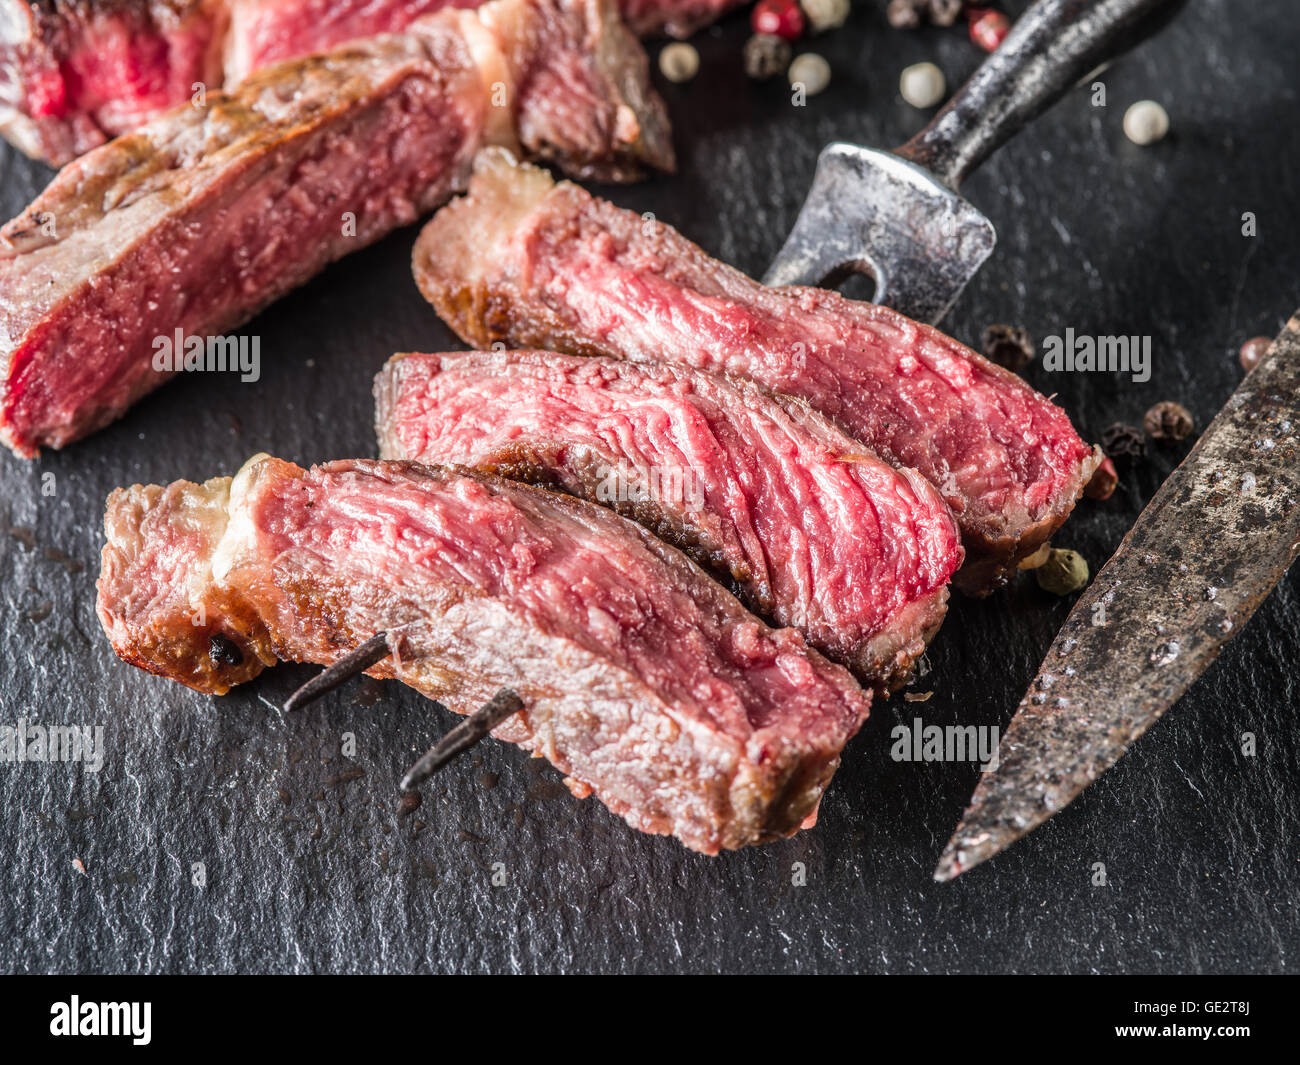 Medium Rib eye steak on the graphite tray. Stock Photo